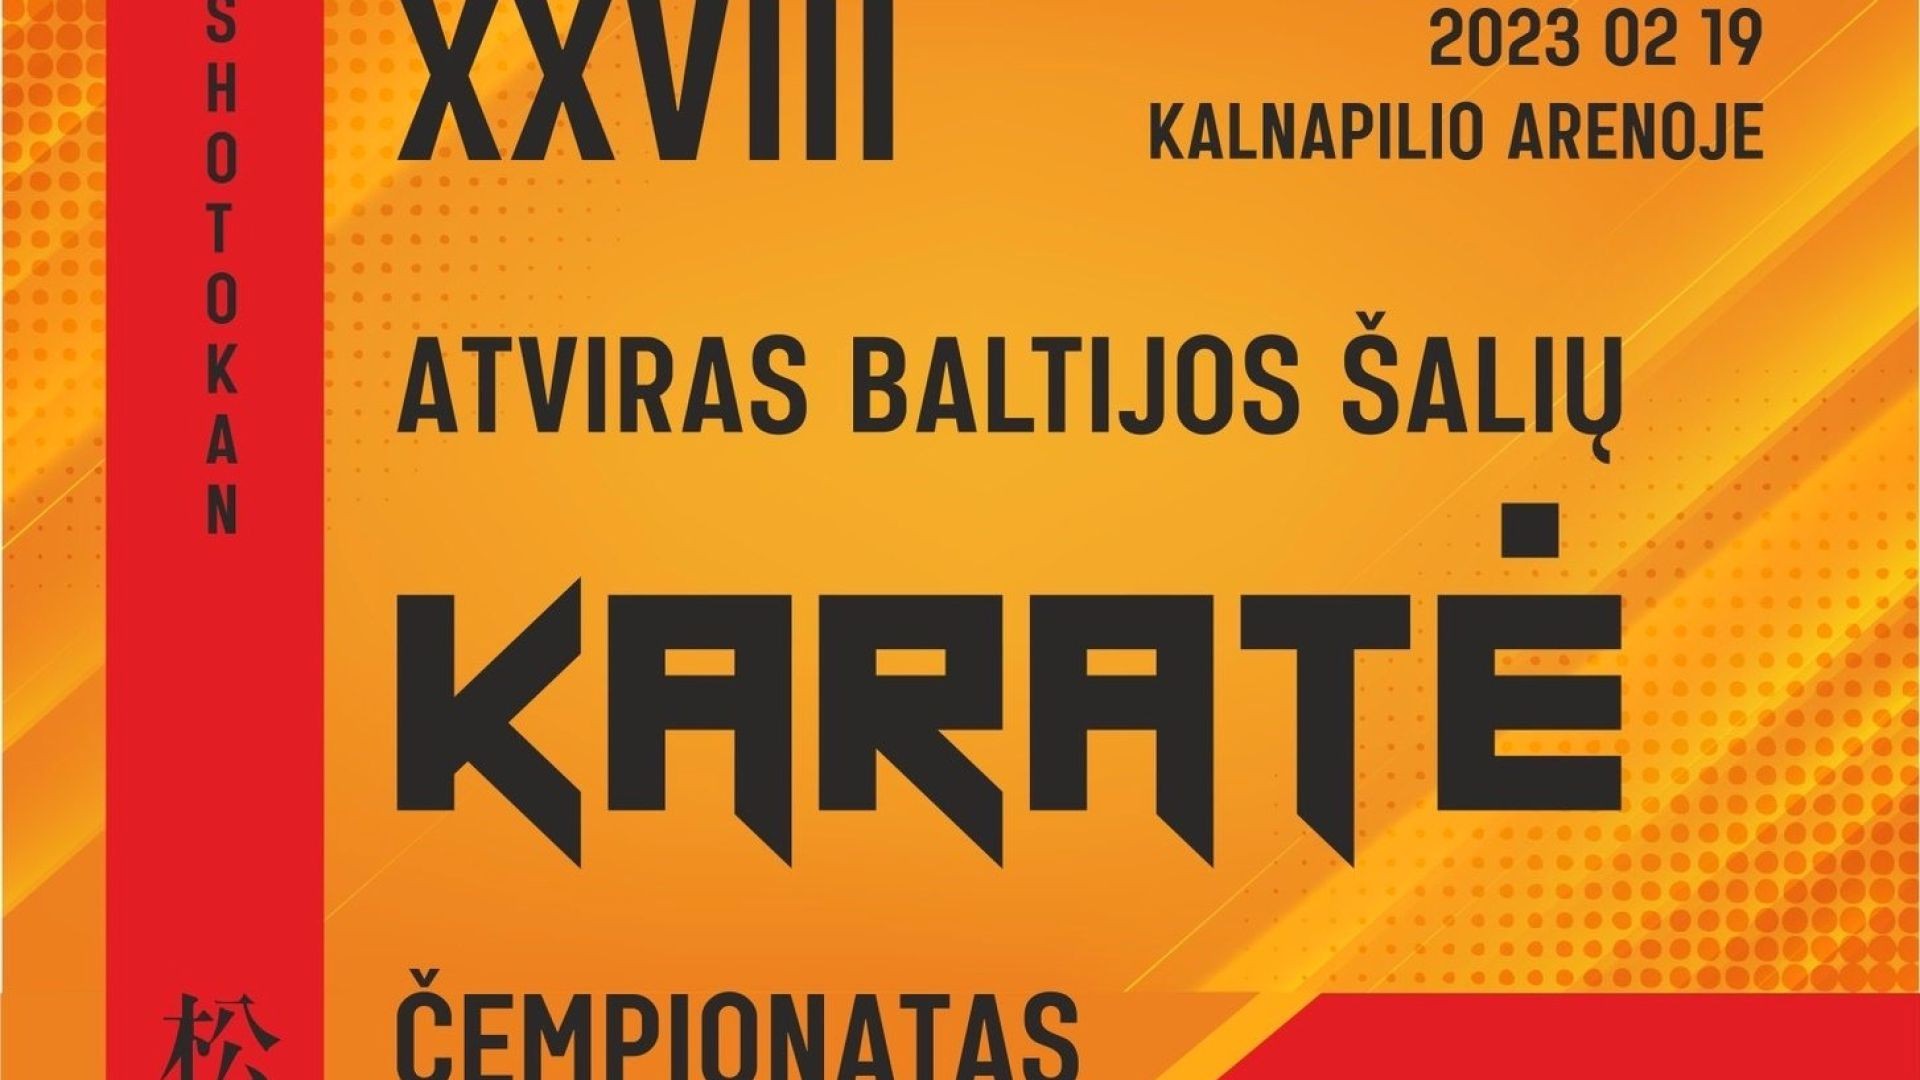 TATAMI 1 | XXVIII Atviras Baltijos šalių Shotokan karatė čempionatas